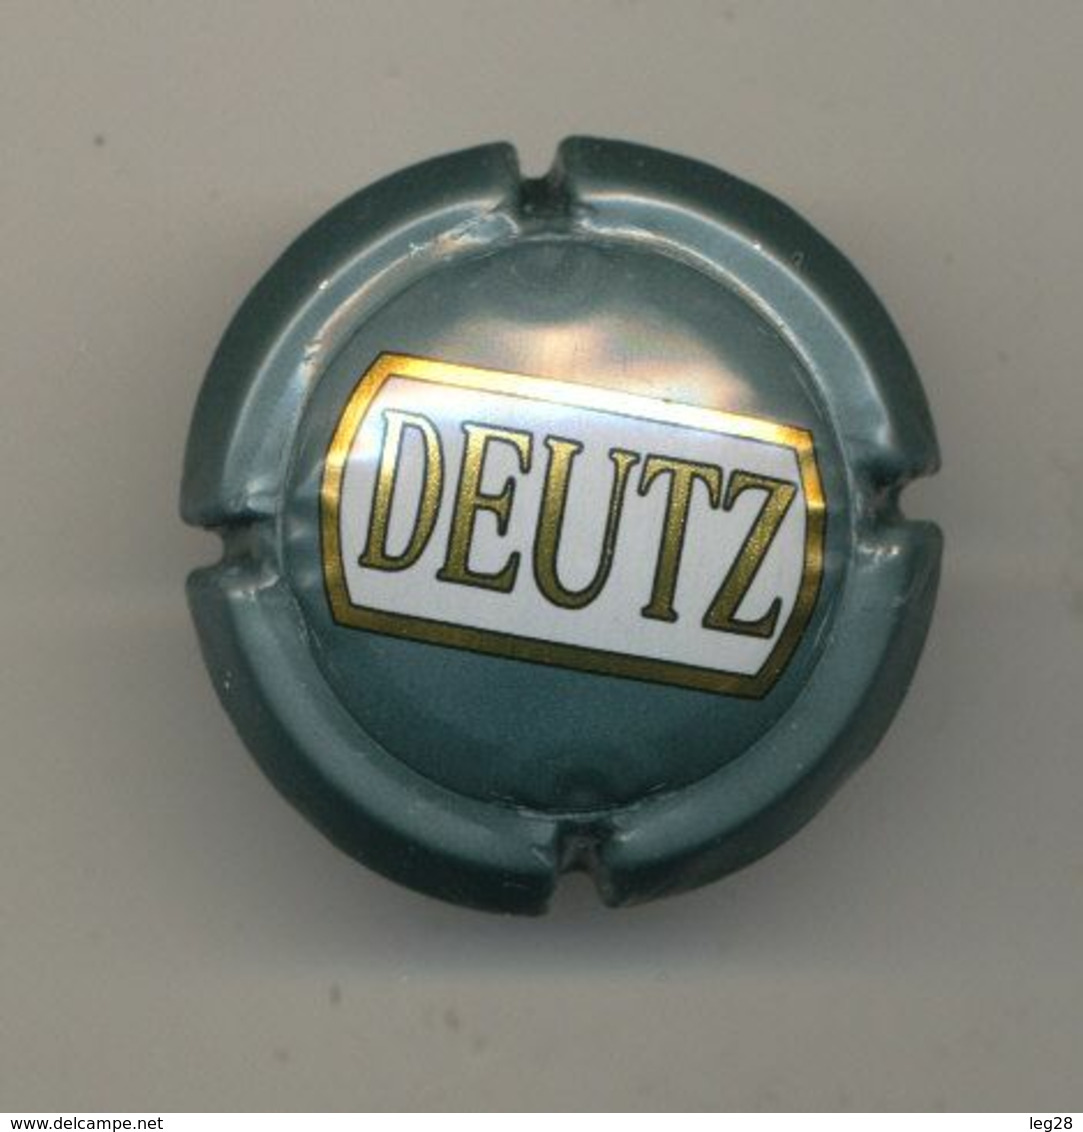 DEUTZ - Deutz